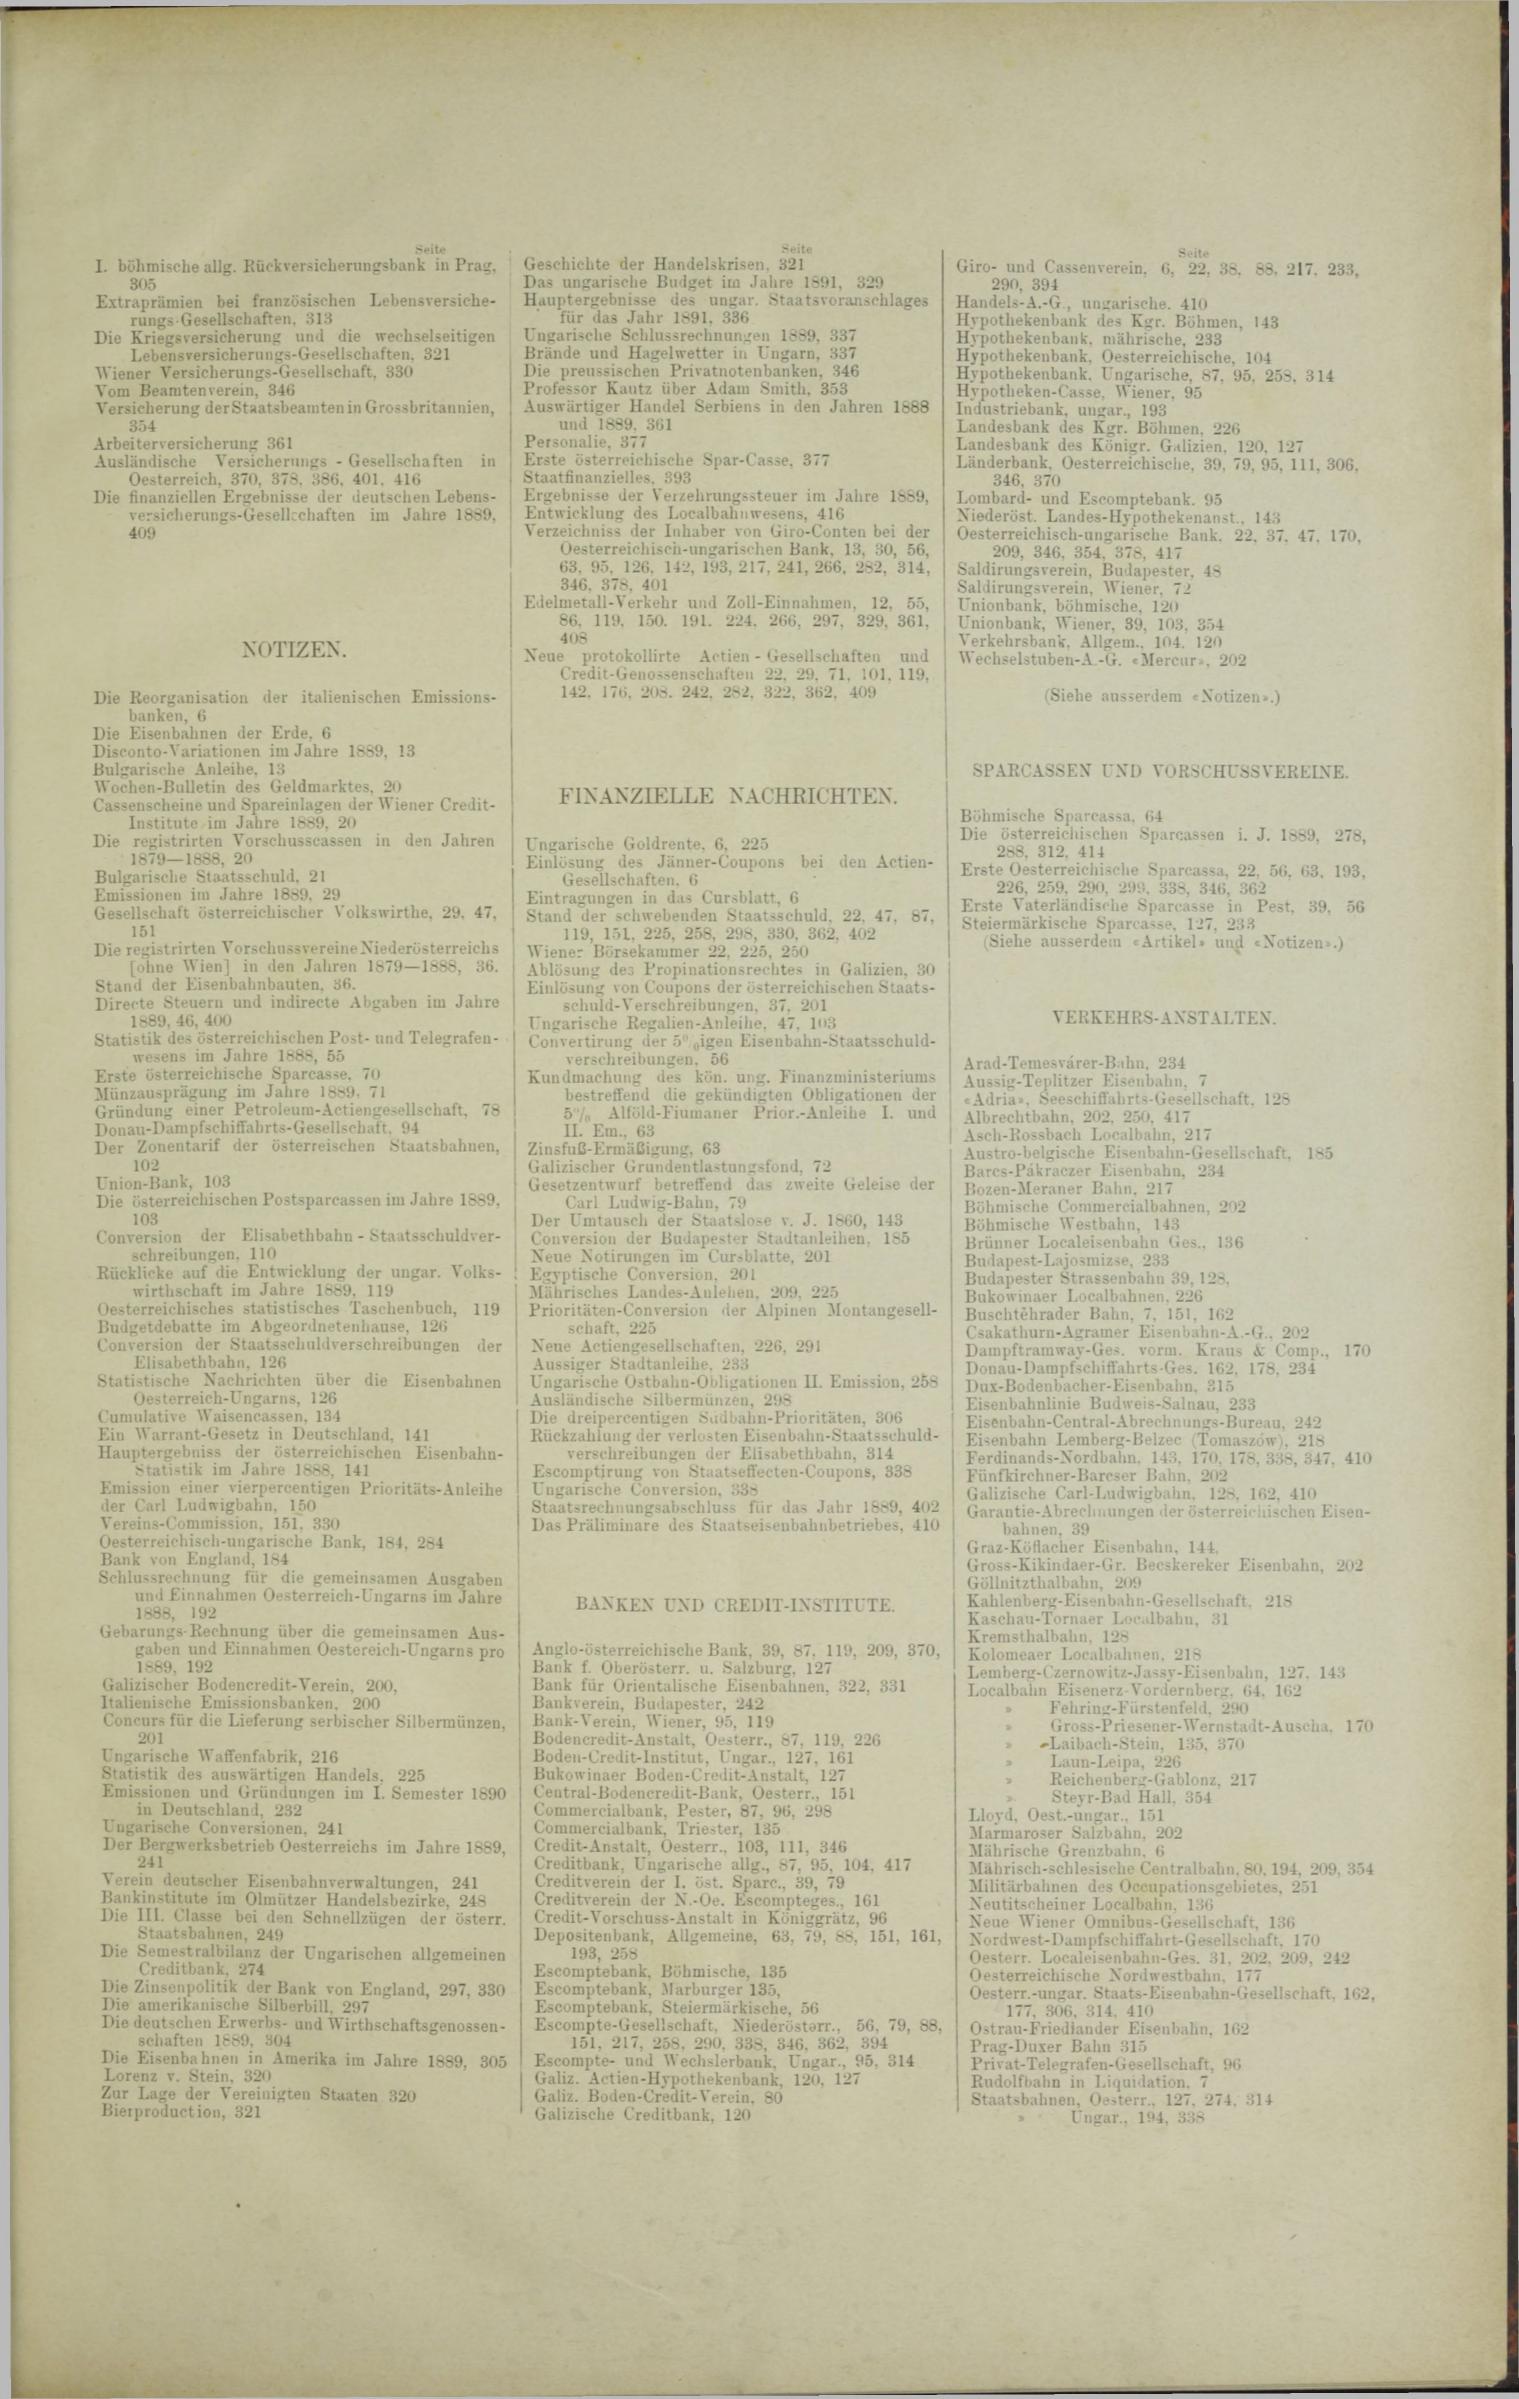 Der Tresor 20.11.1890 - Seite 11